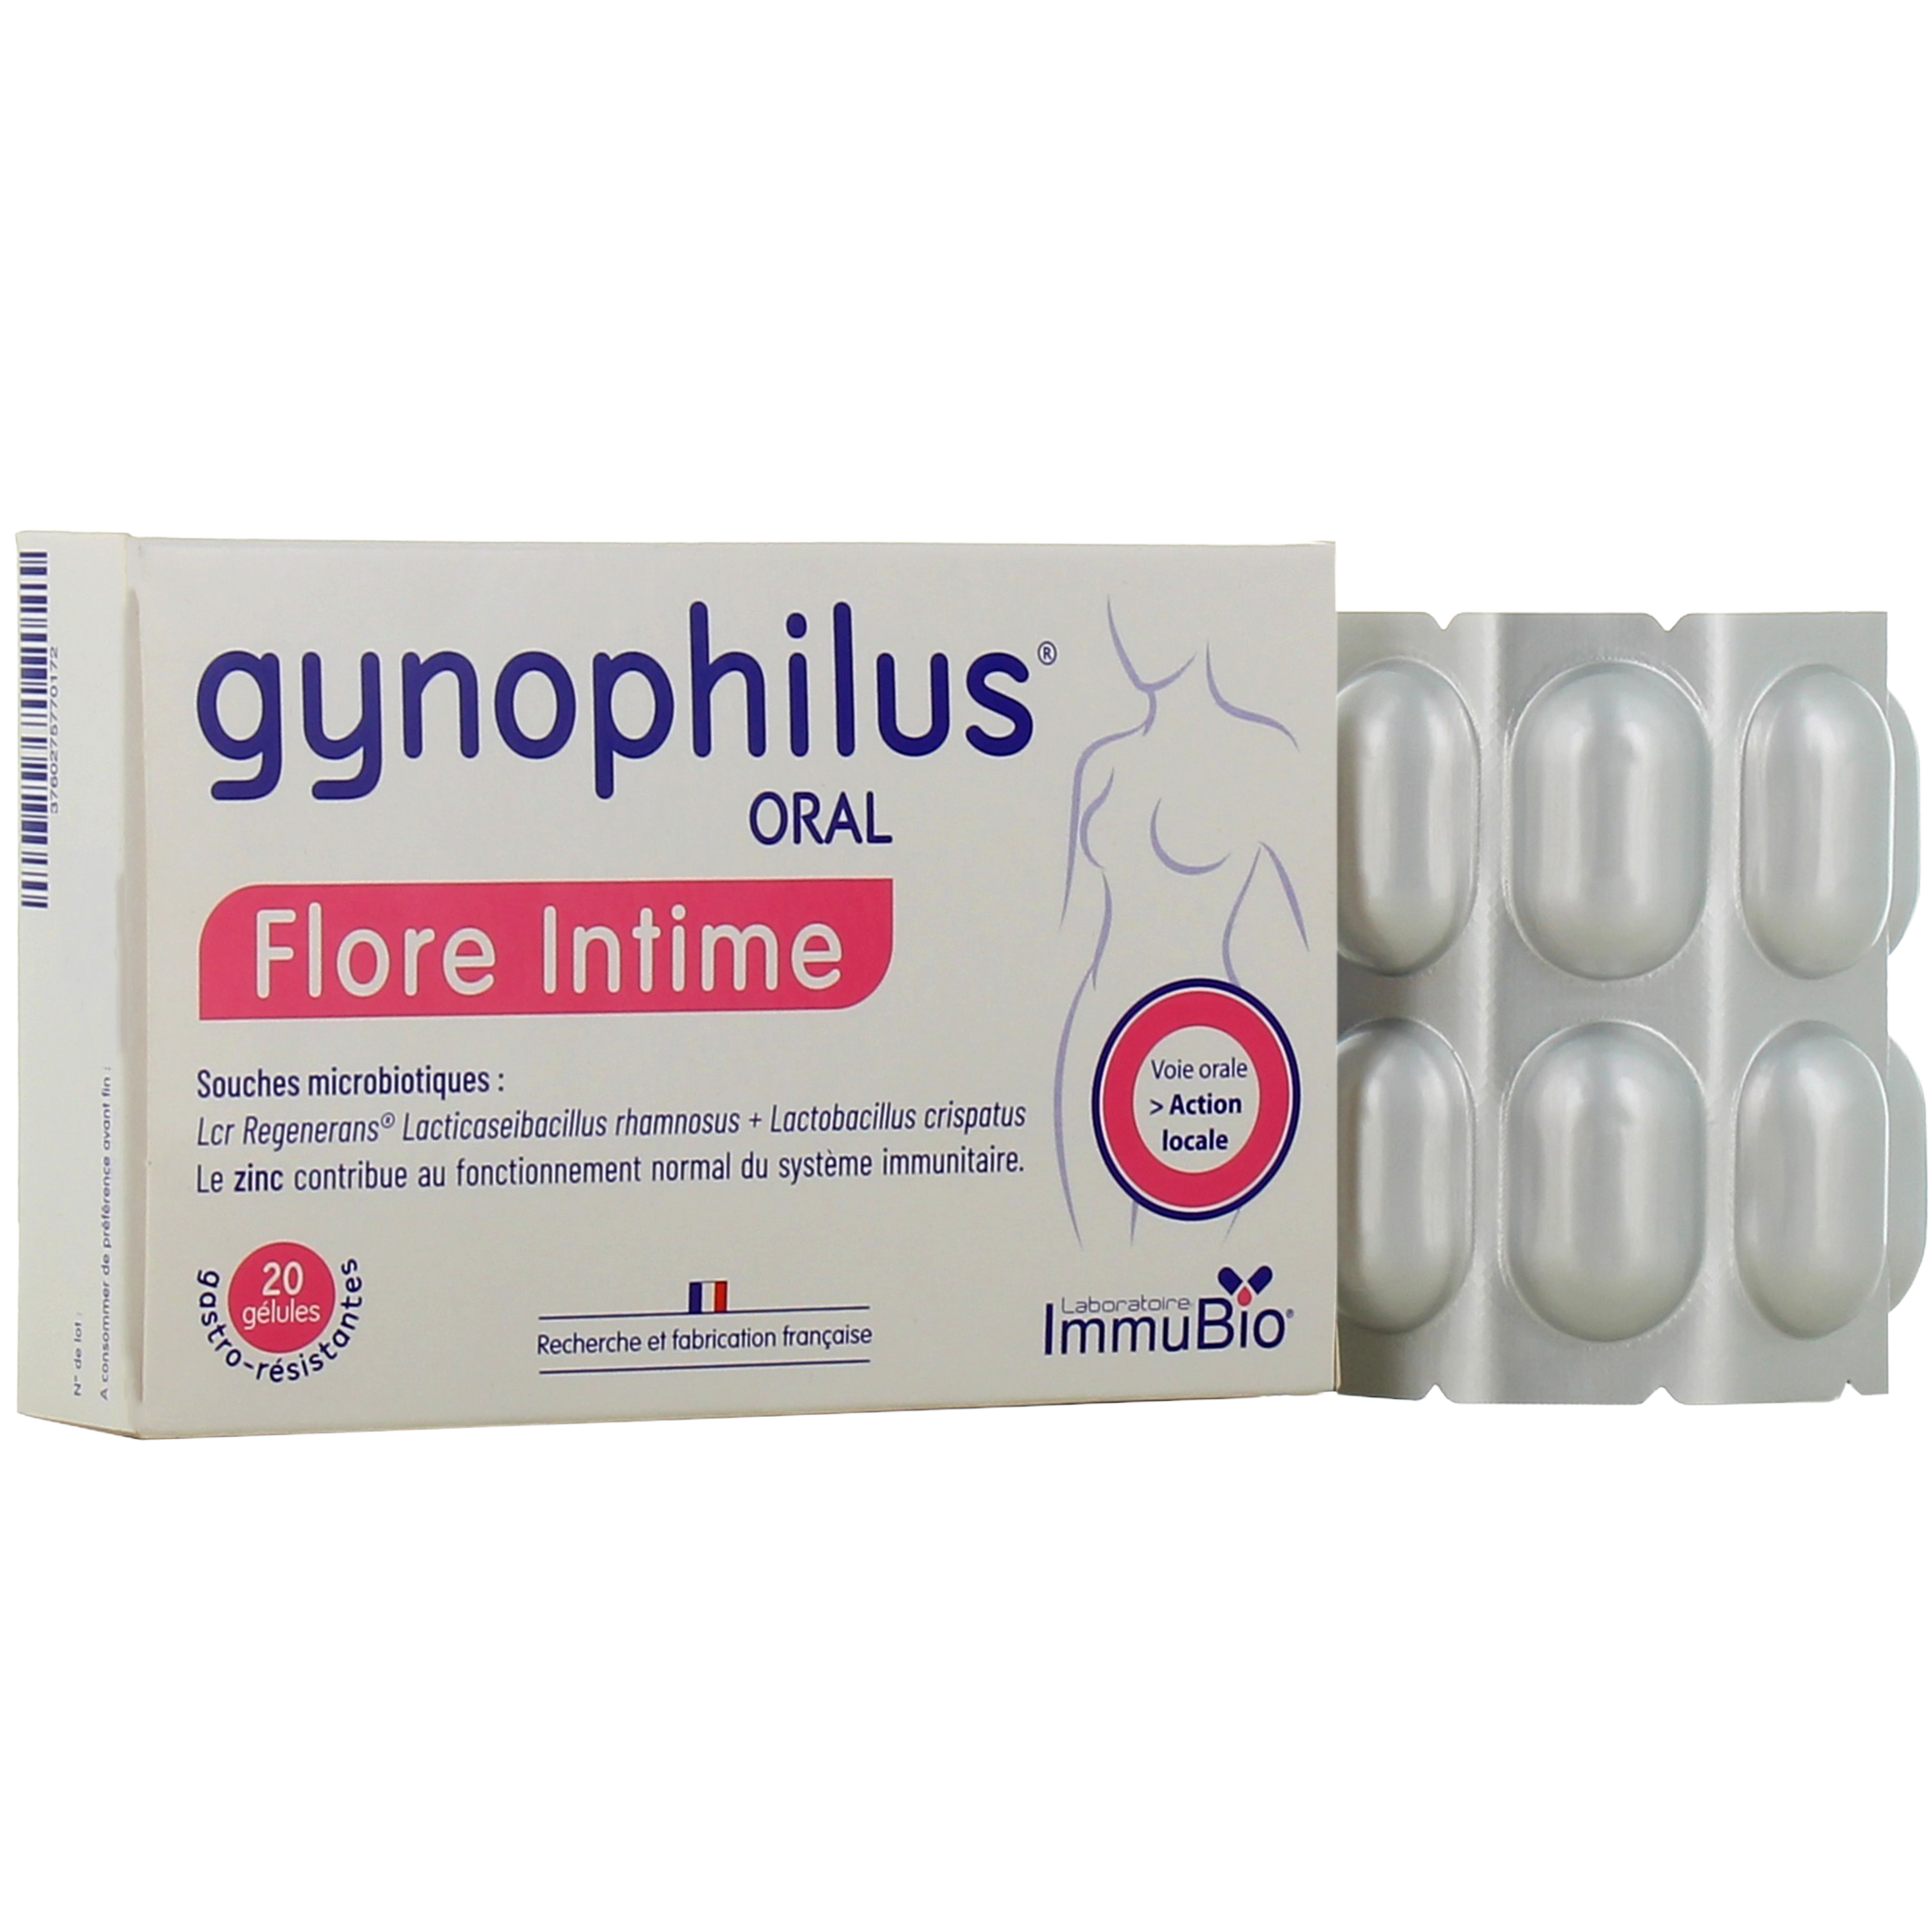 Nutergia Ergyphilus Intima 60 gélules - Pharmacie des Drakkars